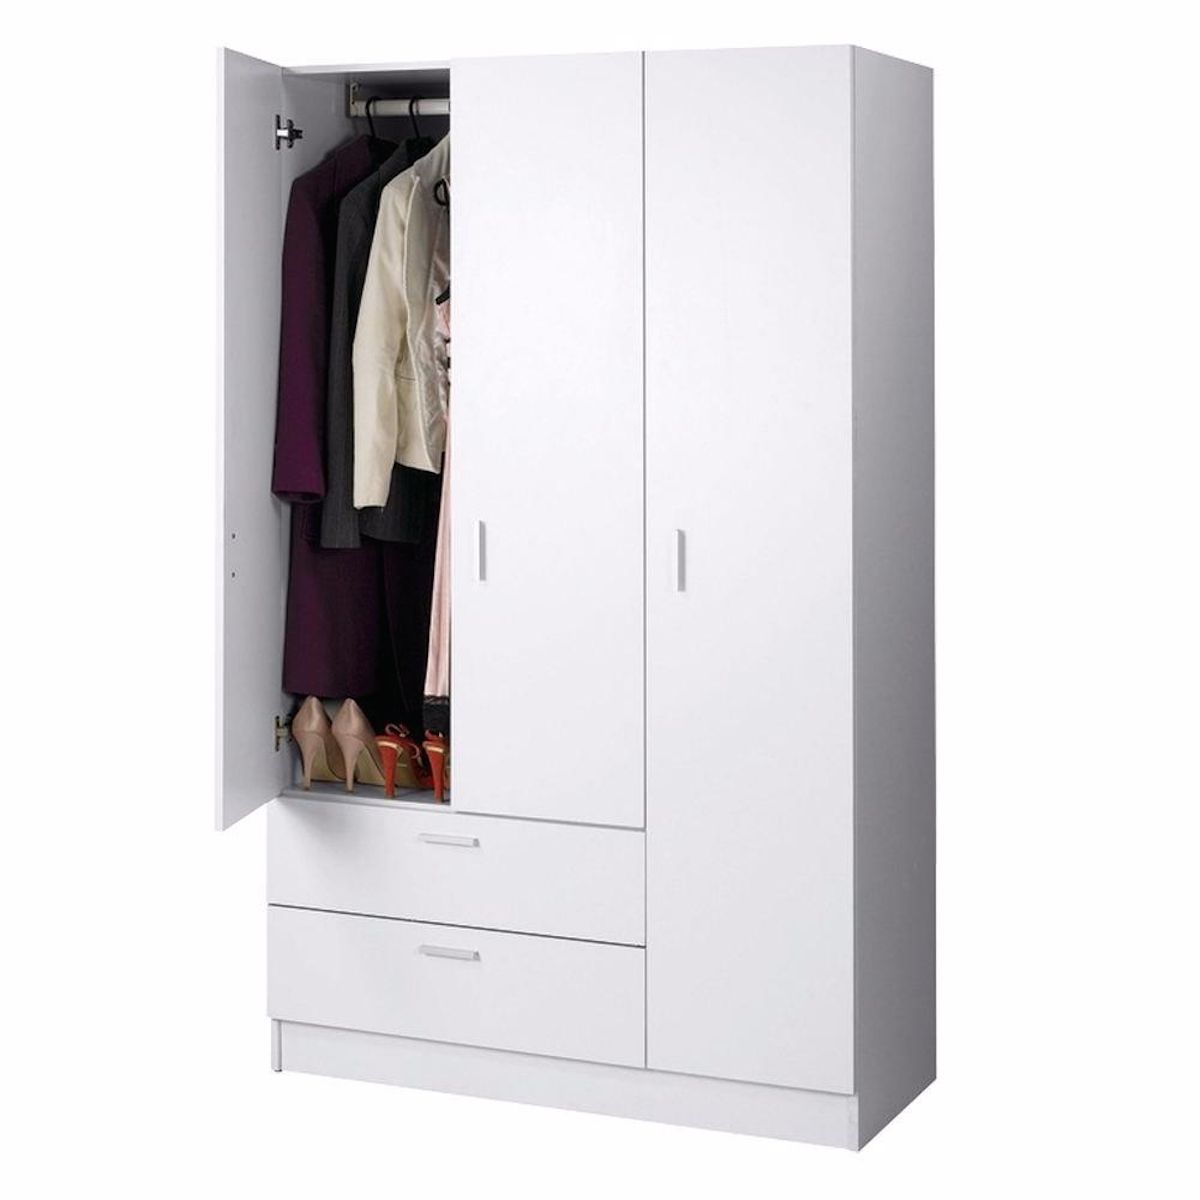 Maxx 3 Door Wardrobe White | Wardrobes | Lifestyle Furniture Inside White 3 Door Wardrobes (View 15 of 15)